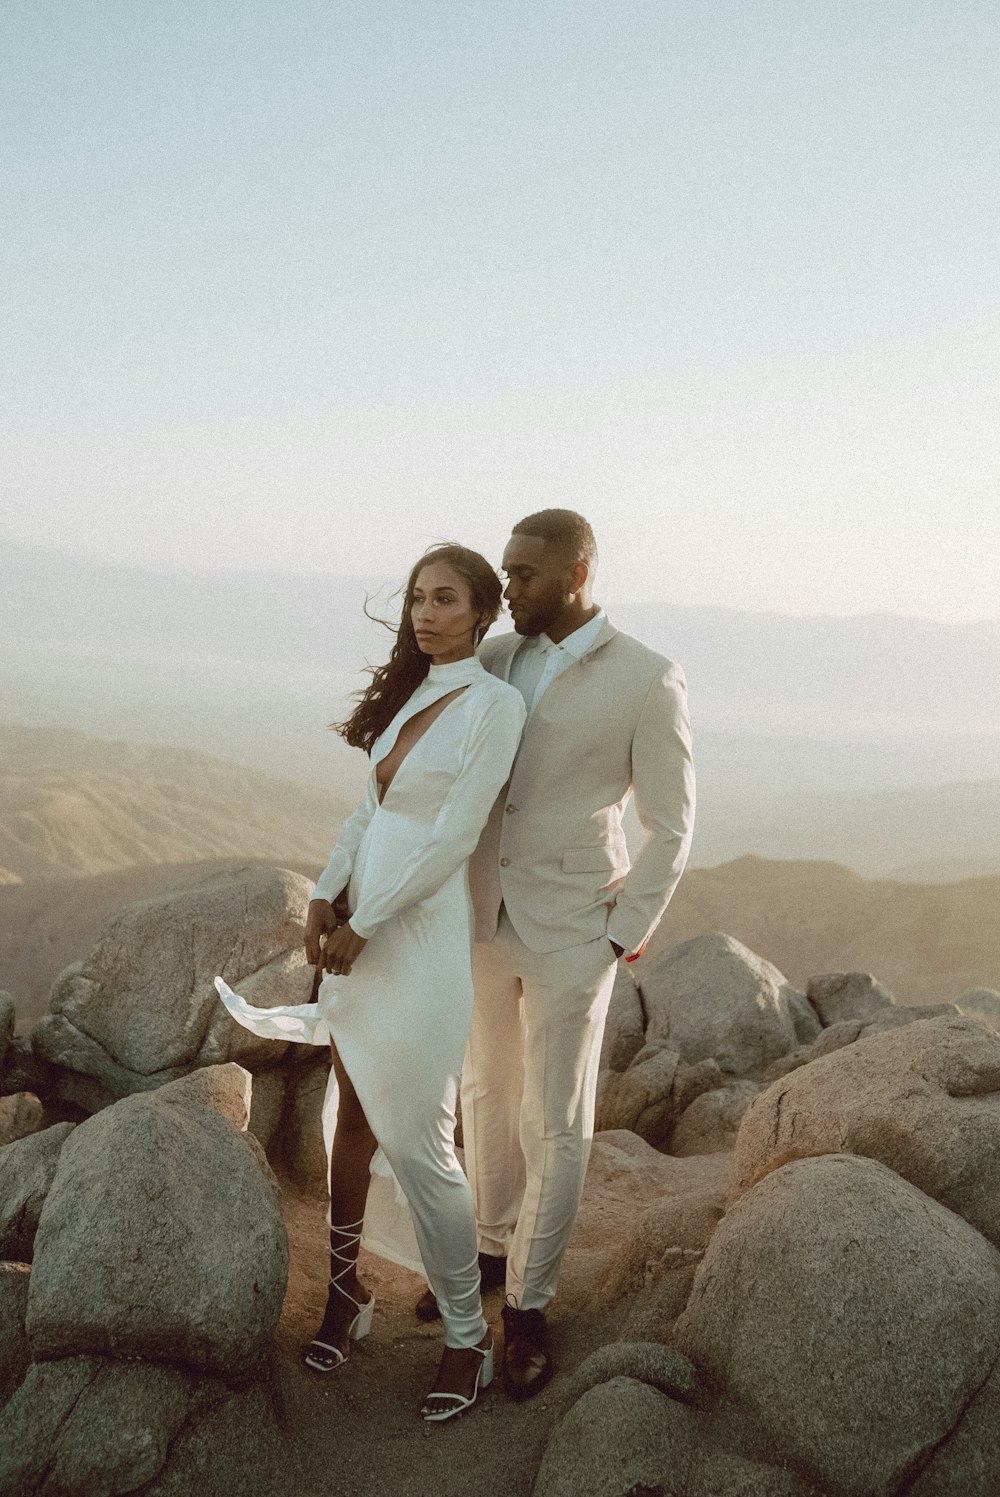 uomo in abito bianco in piedi accanto alla donna in vestito bianco sulla roccia durante il giorno